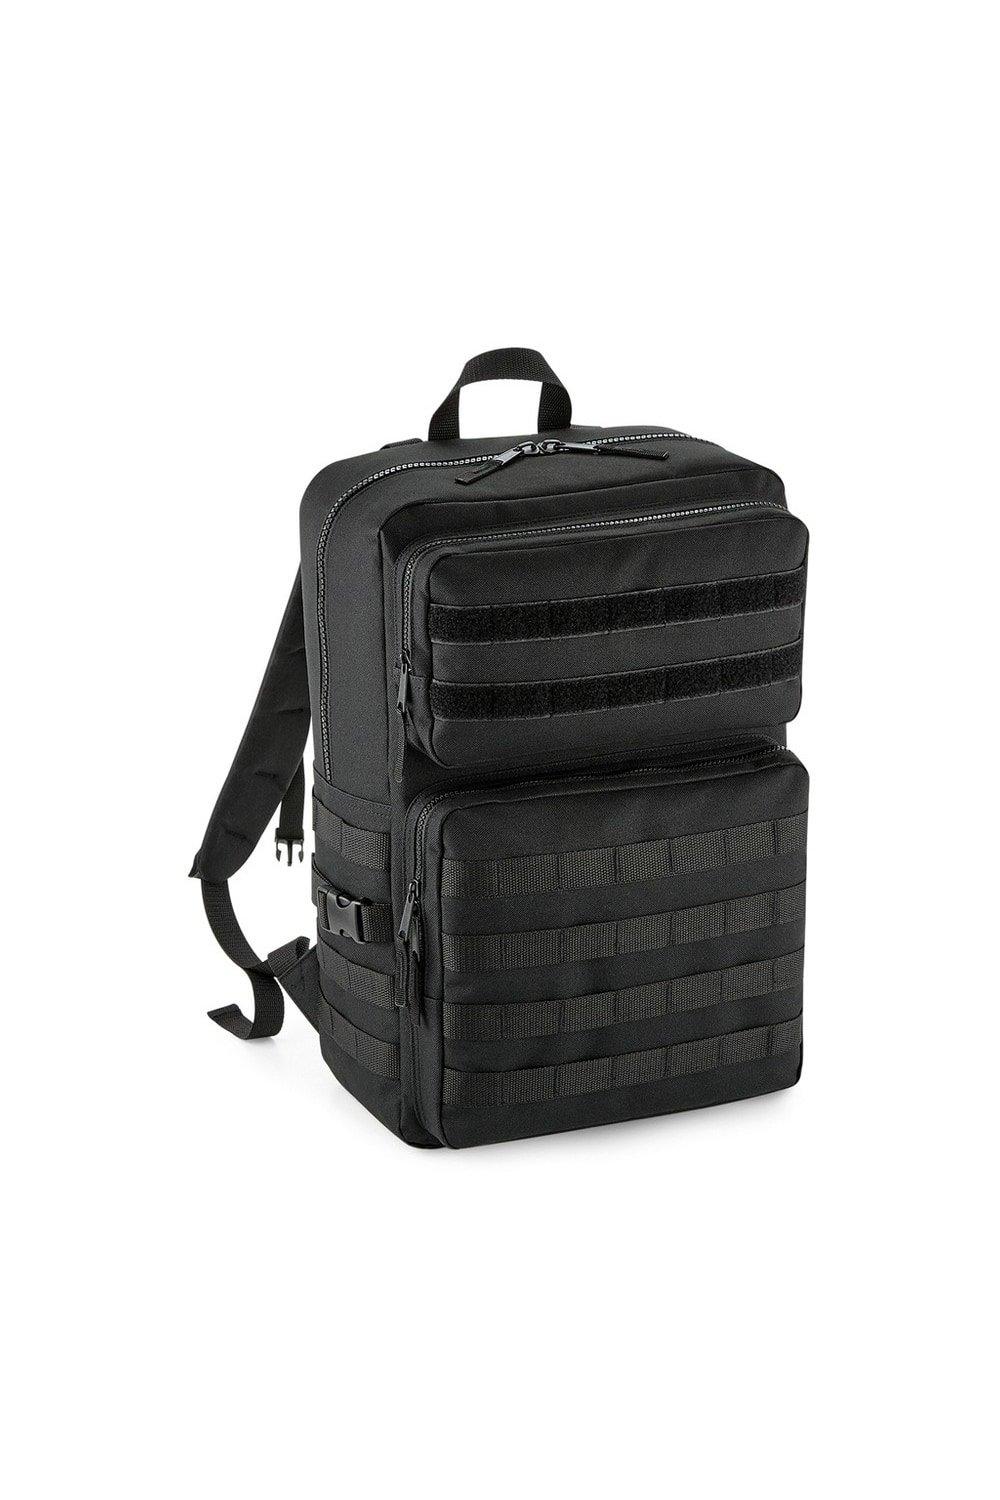 Тактический рюкзак MOLLE Bagbase, черный huntvp 1000d тактический рюкзак 45l molle рюкзак штурмовой пакет открытый кемпинг туризм рюкзак открытый рюкзак коричневый